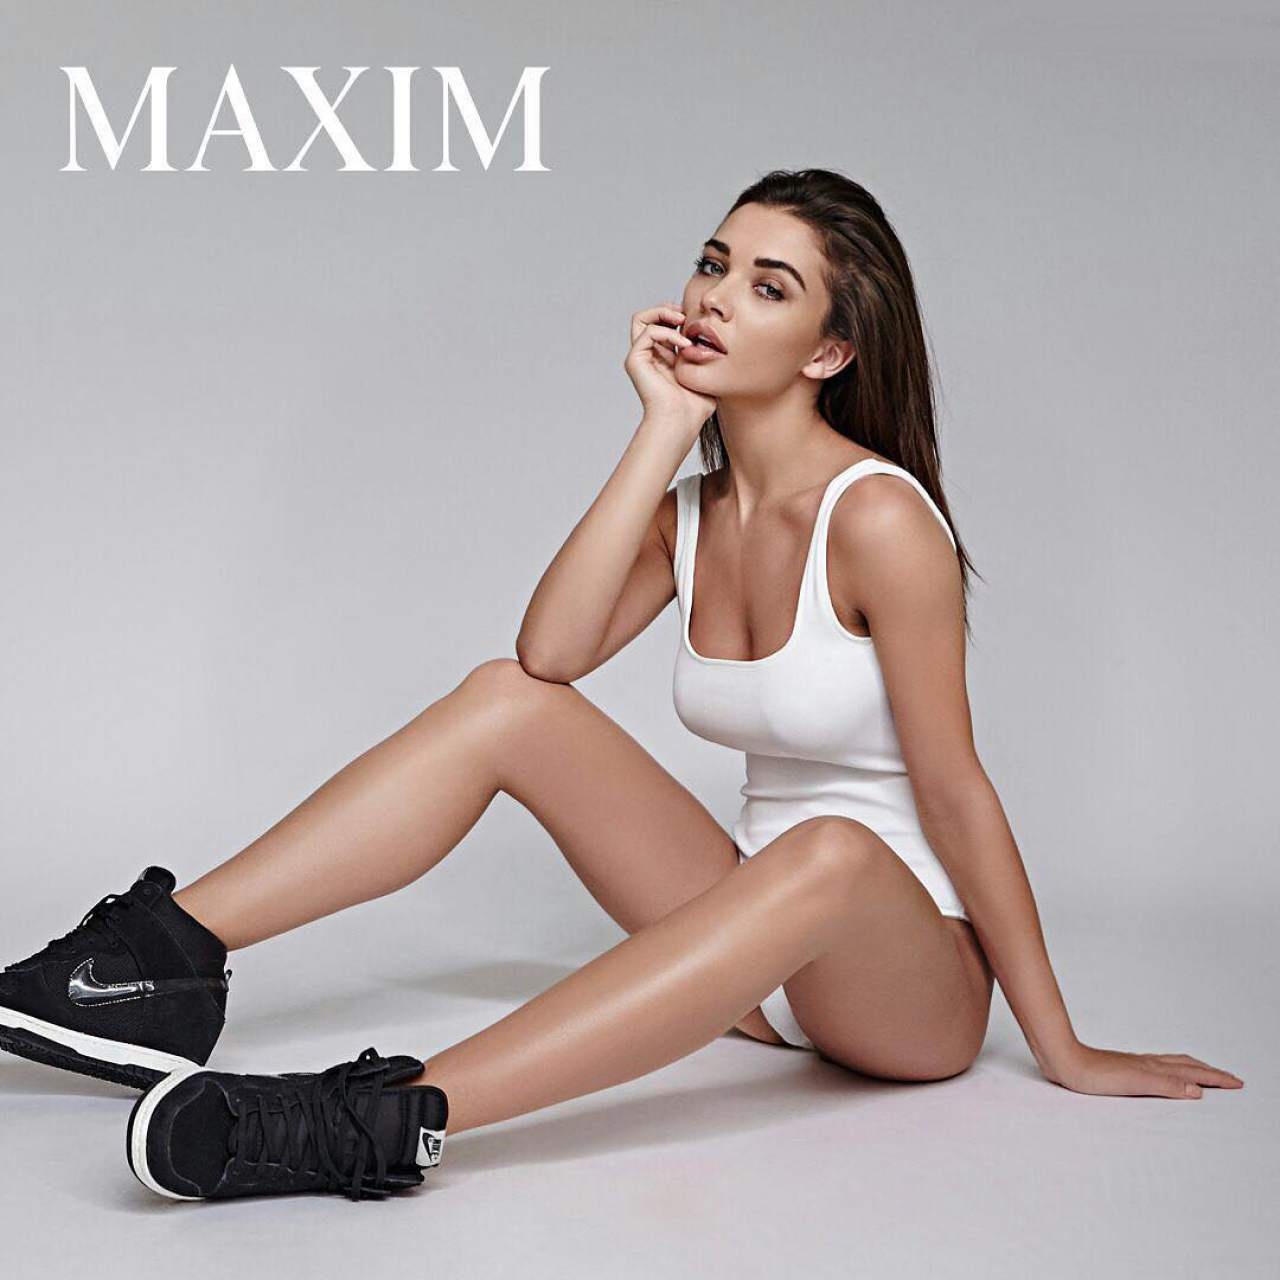 Amy Jackson Super Sexy Maxim January-February 2017 Cover-girl Photo shoot